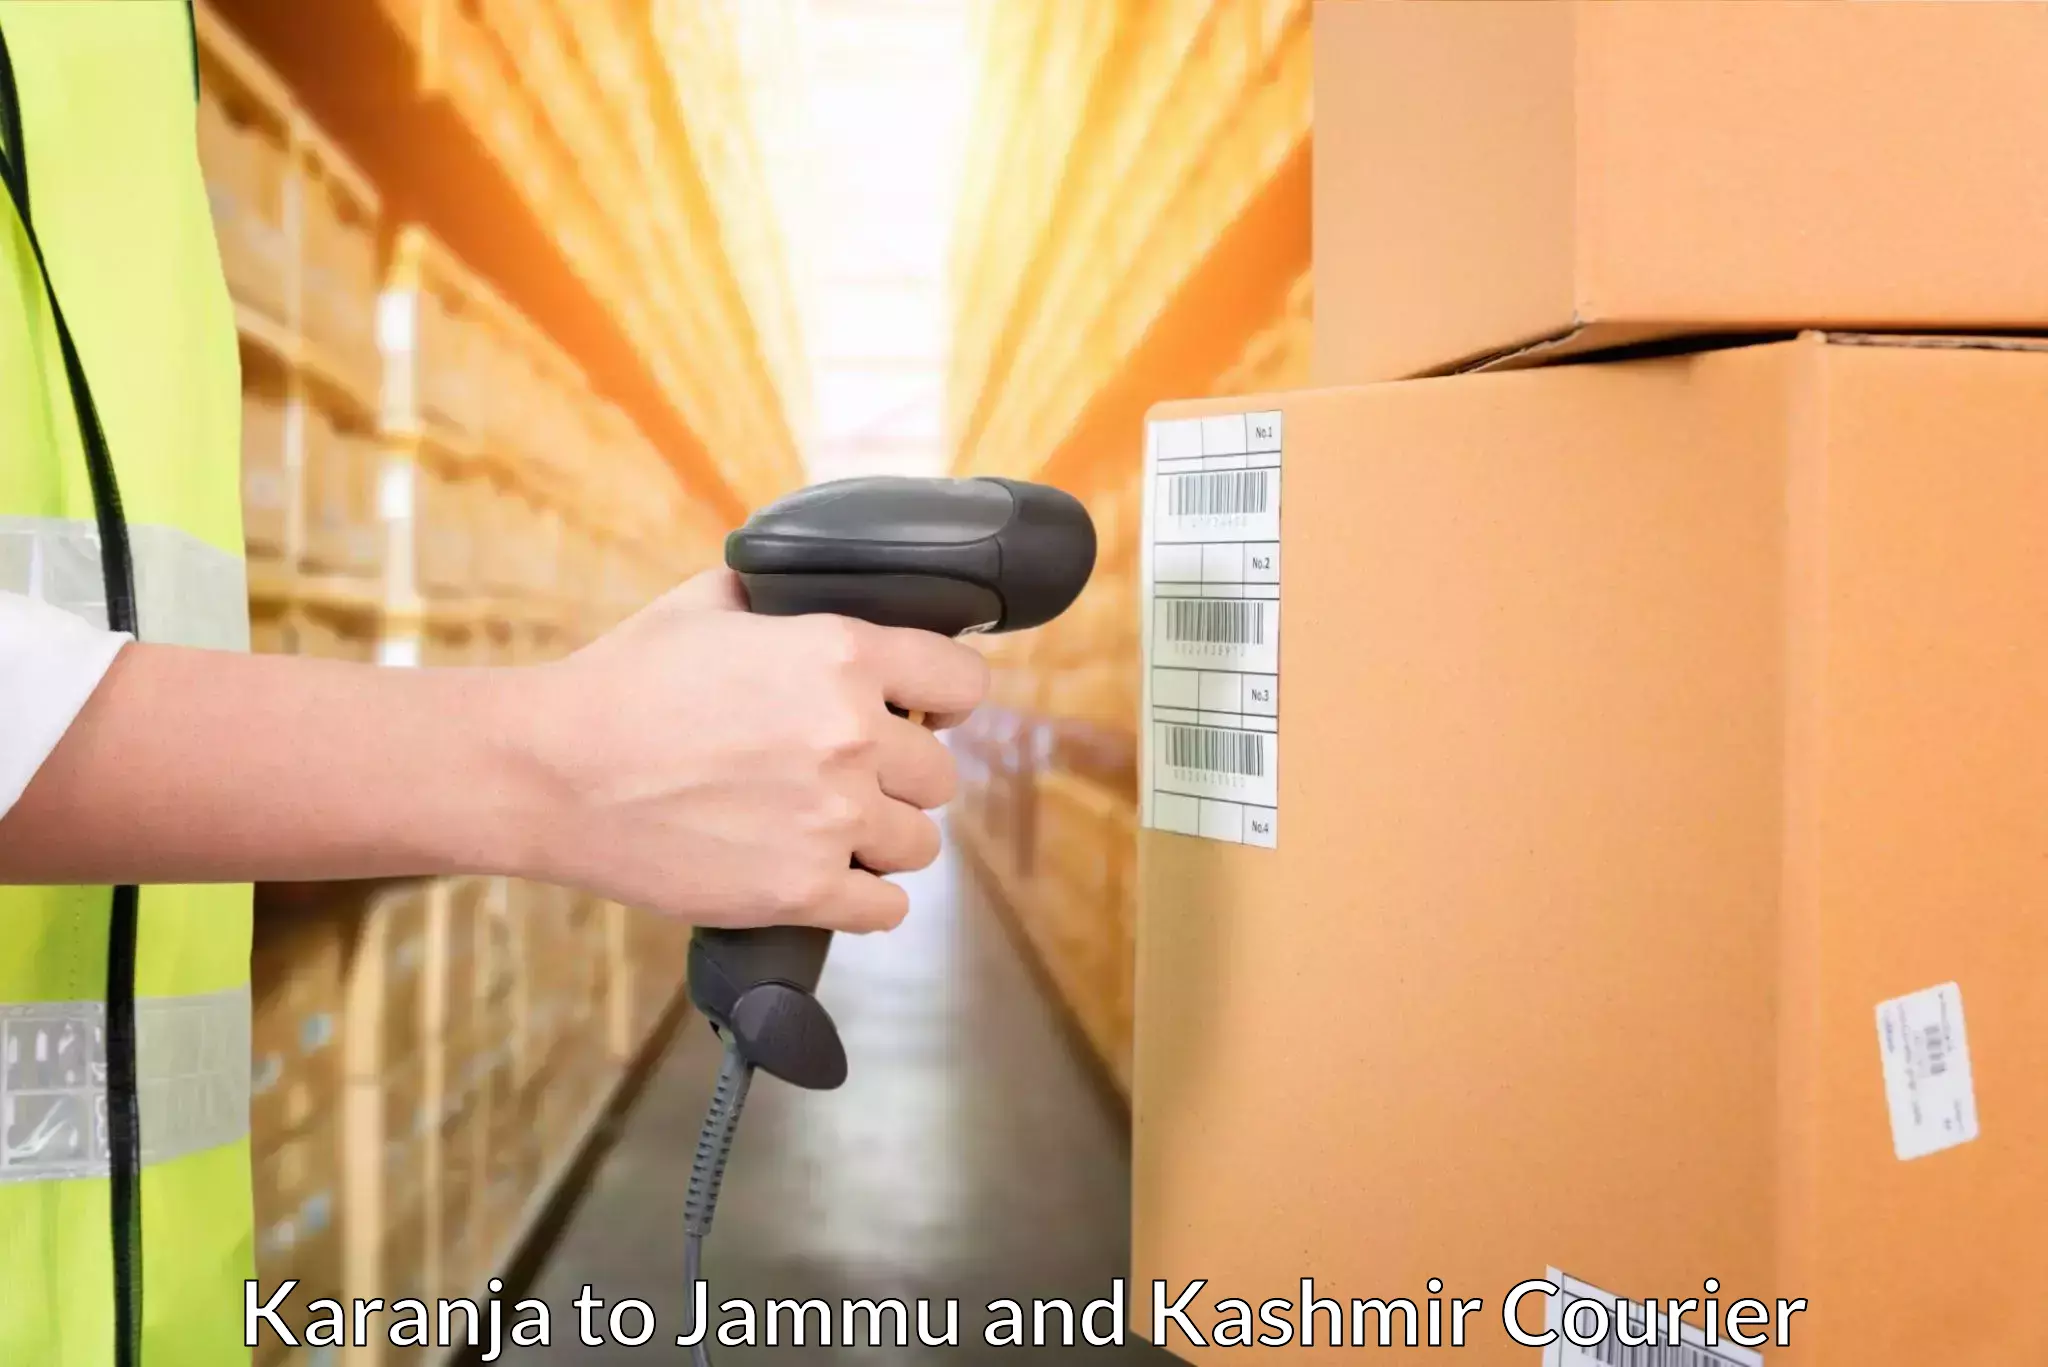 Global shipping networks Karanja to Jammu and Kashmir